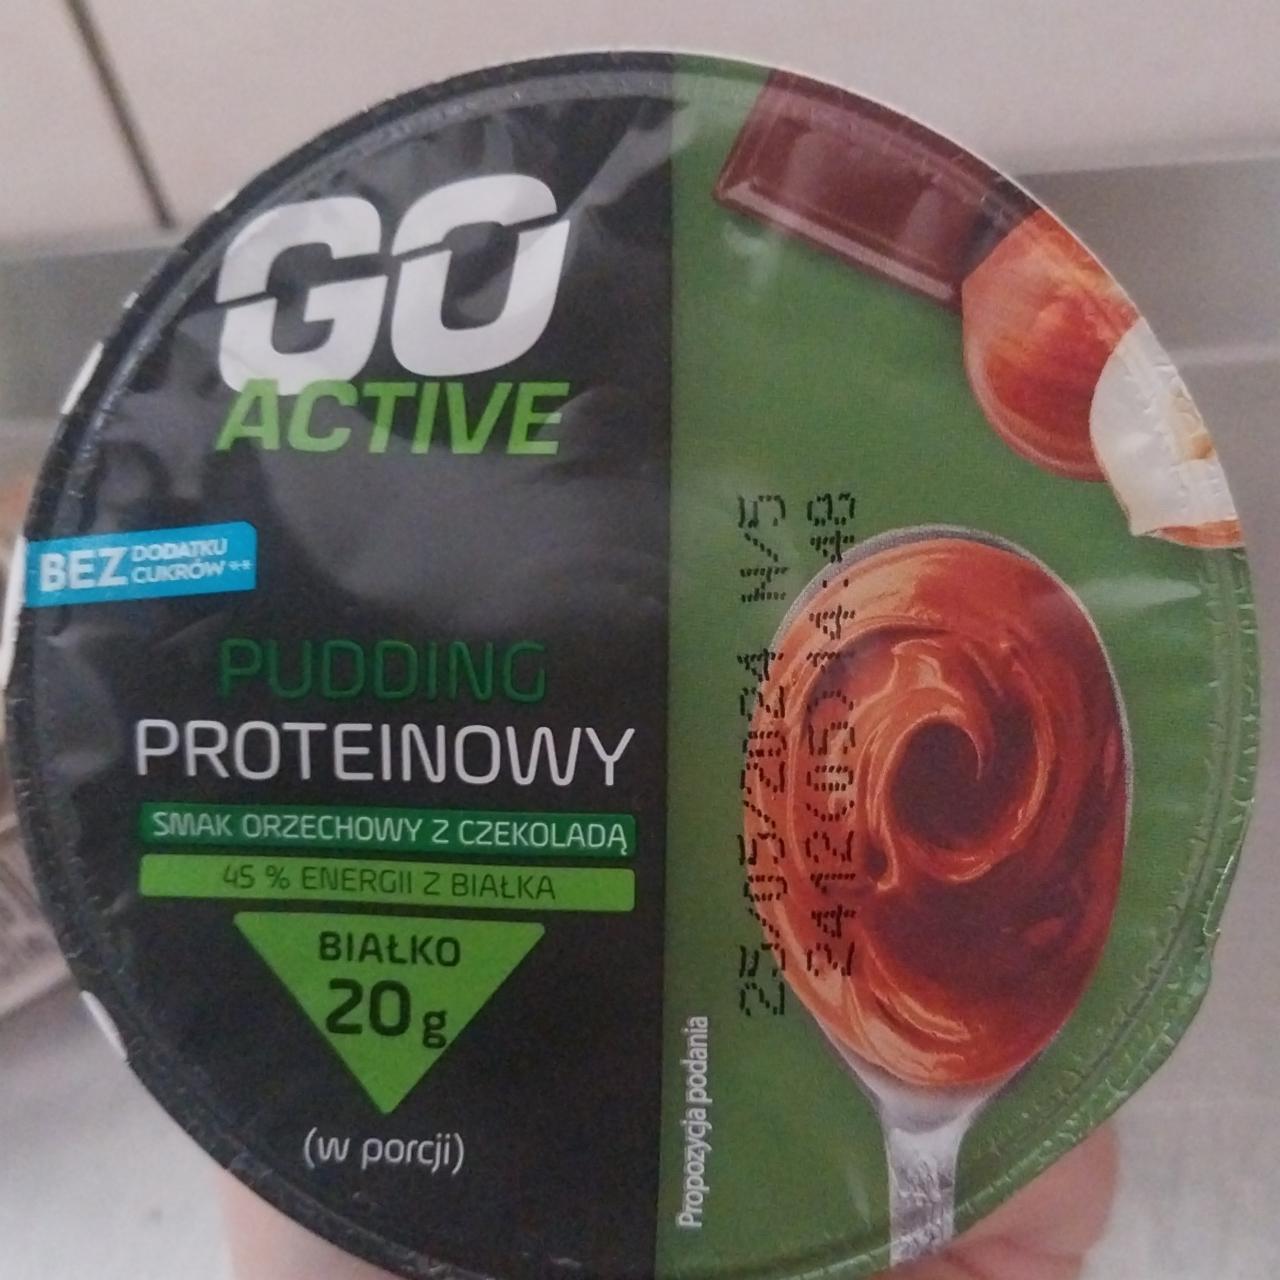 Zdjęcia - Pudding proteinowy smak orzechowy z czekoladą Go Active